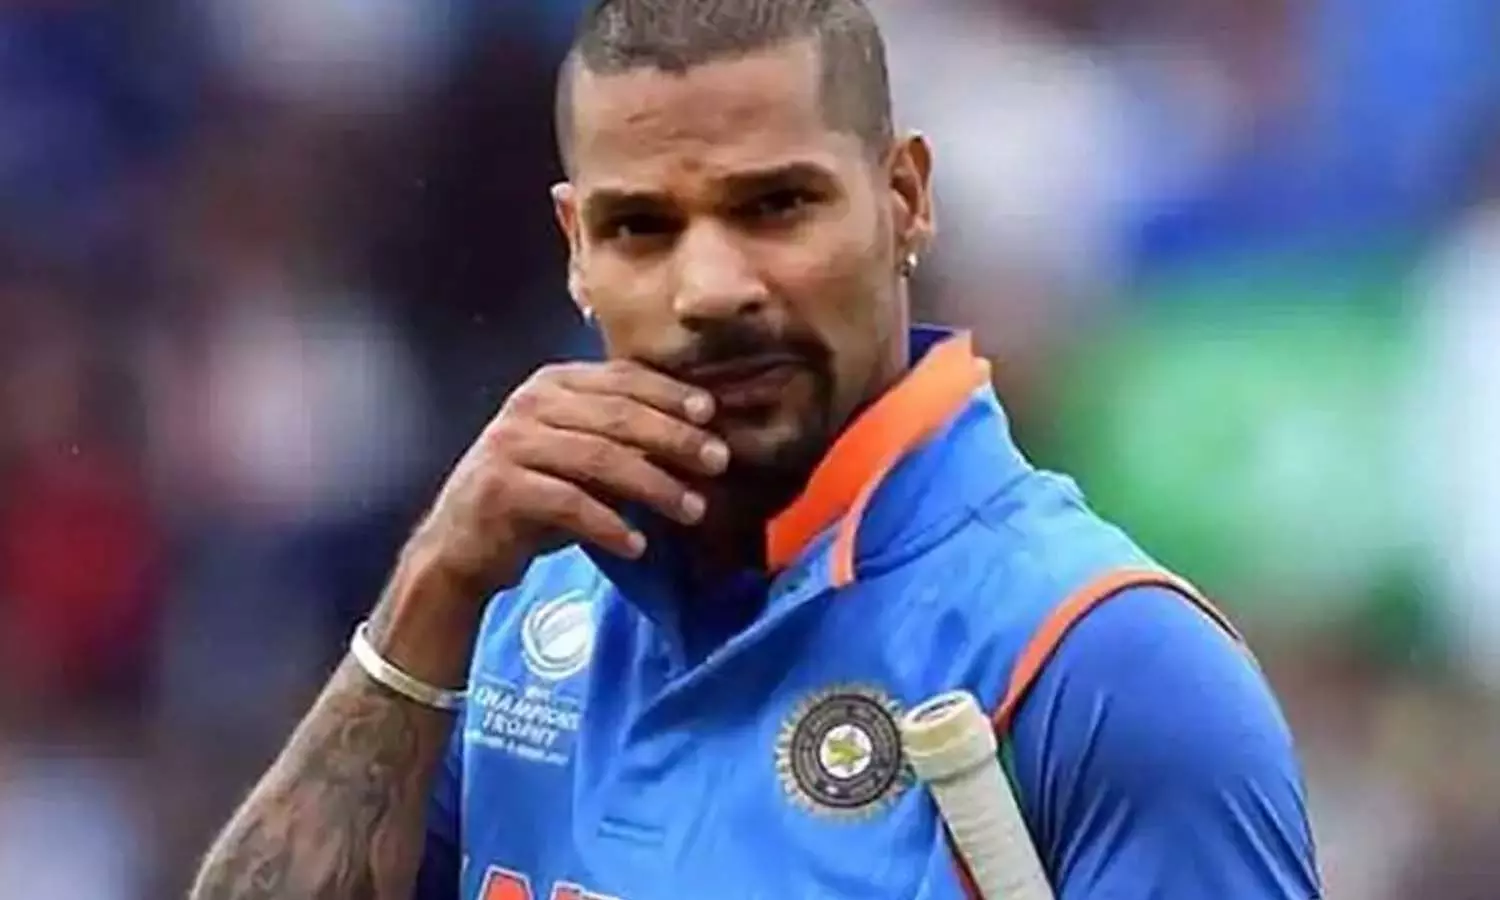 IND vs SL: श्रीलंका दौरे के लिए भारतीय टीम तैयार, कप्तान शिखर धवन हैं बेहद उत्साहित